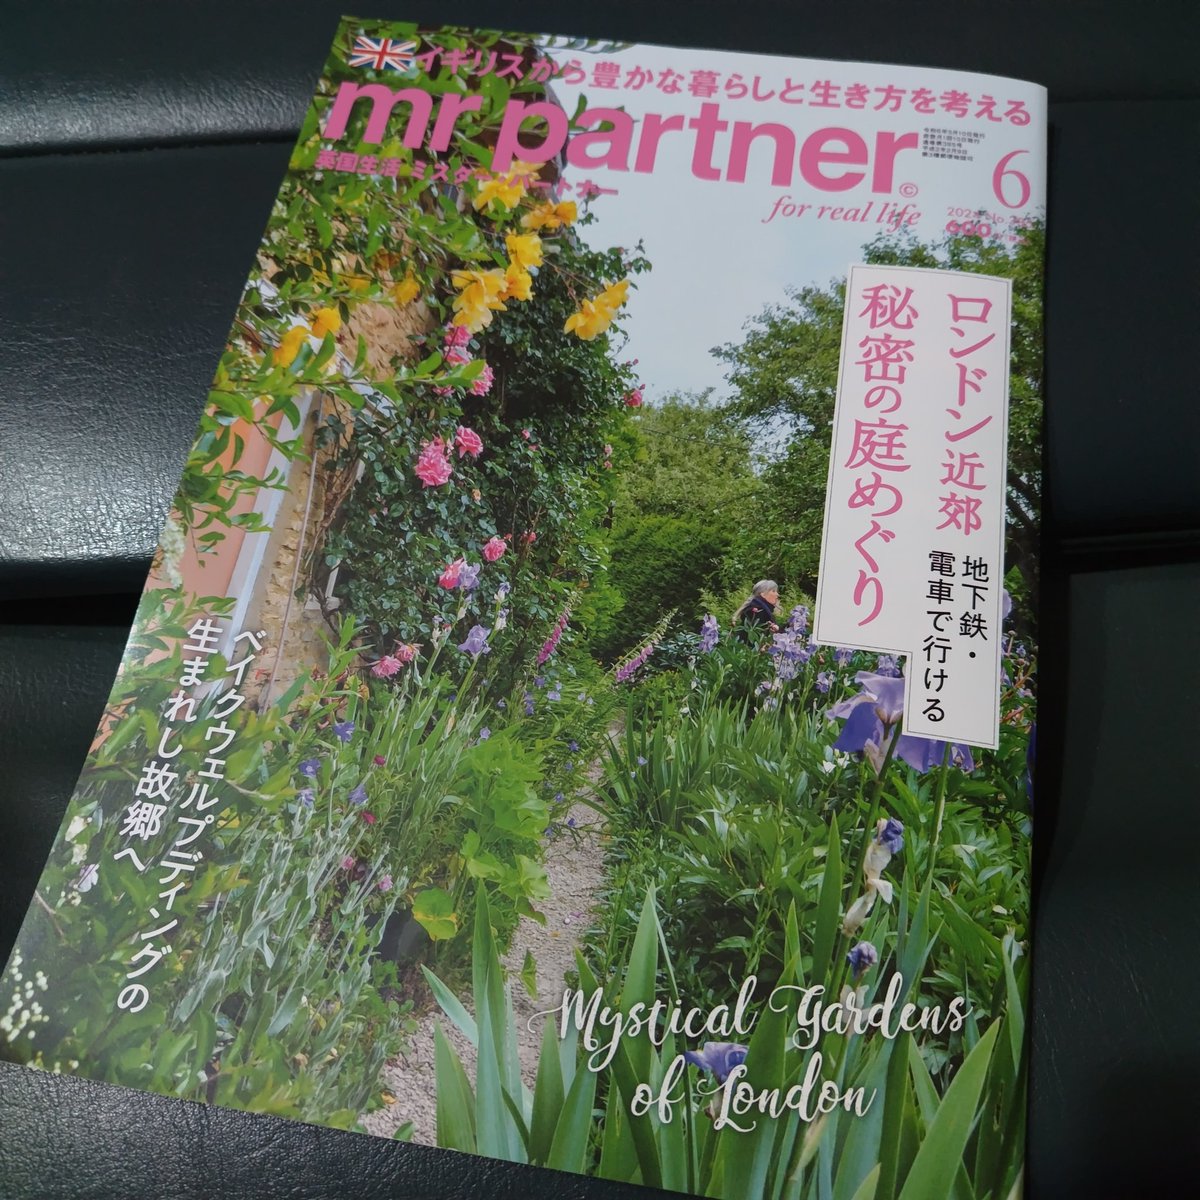 mr partner 6月号発売
恒松先生の特集や連載、いつかまとめて出版していただけないだろうか…